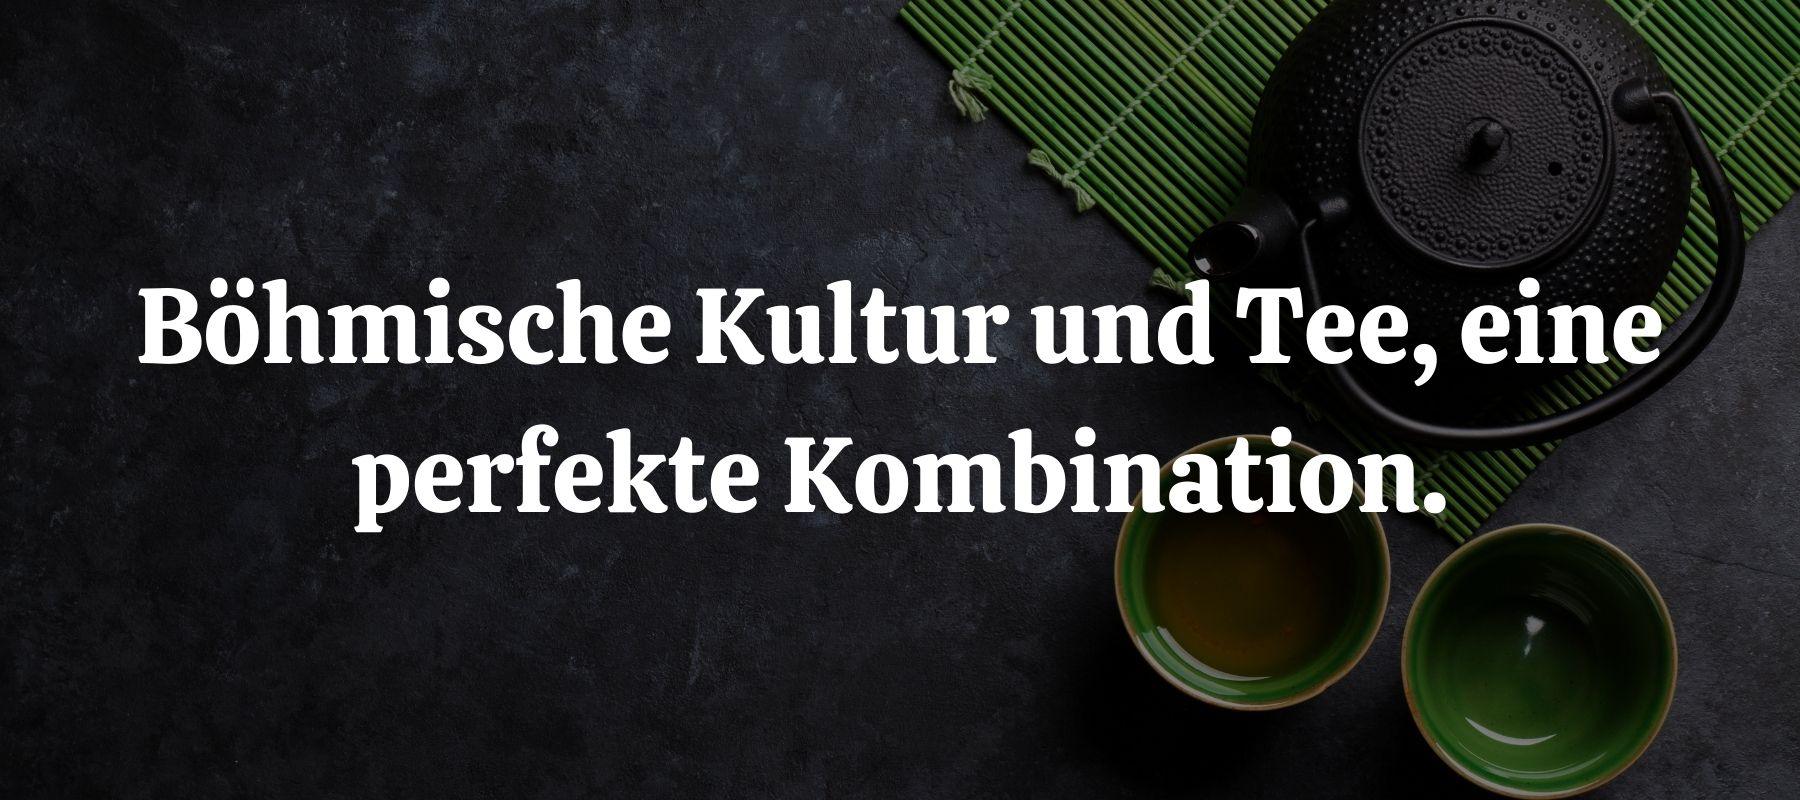 Böhmische Kultur und Tee, eine perfekte Kombination.